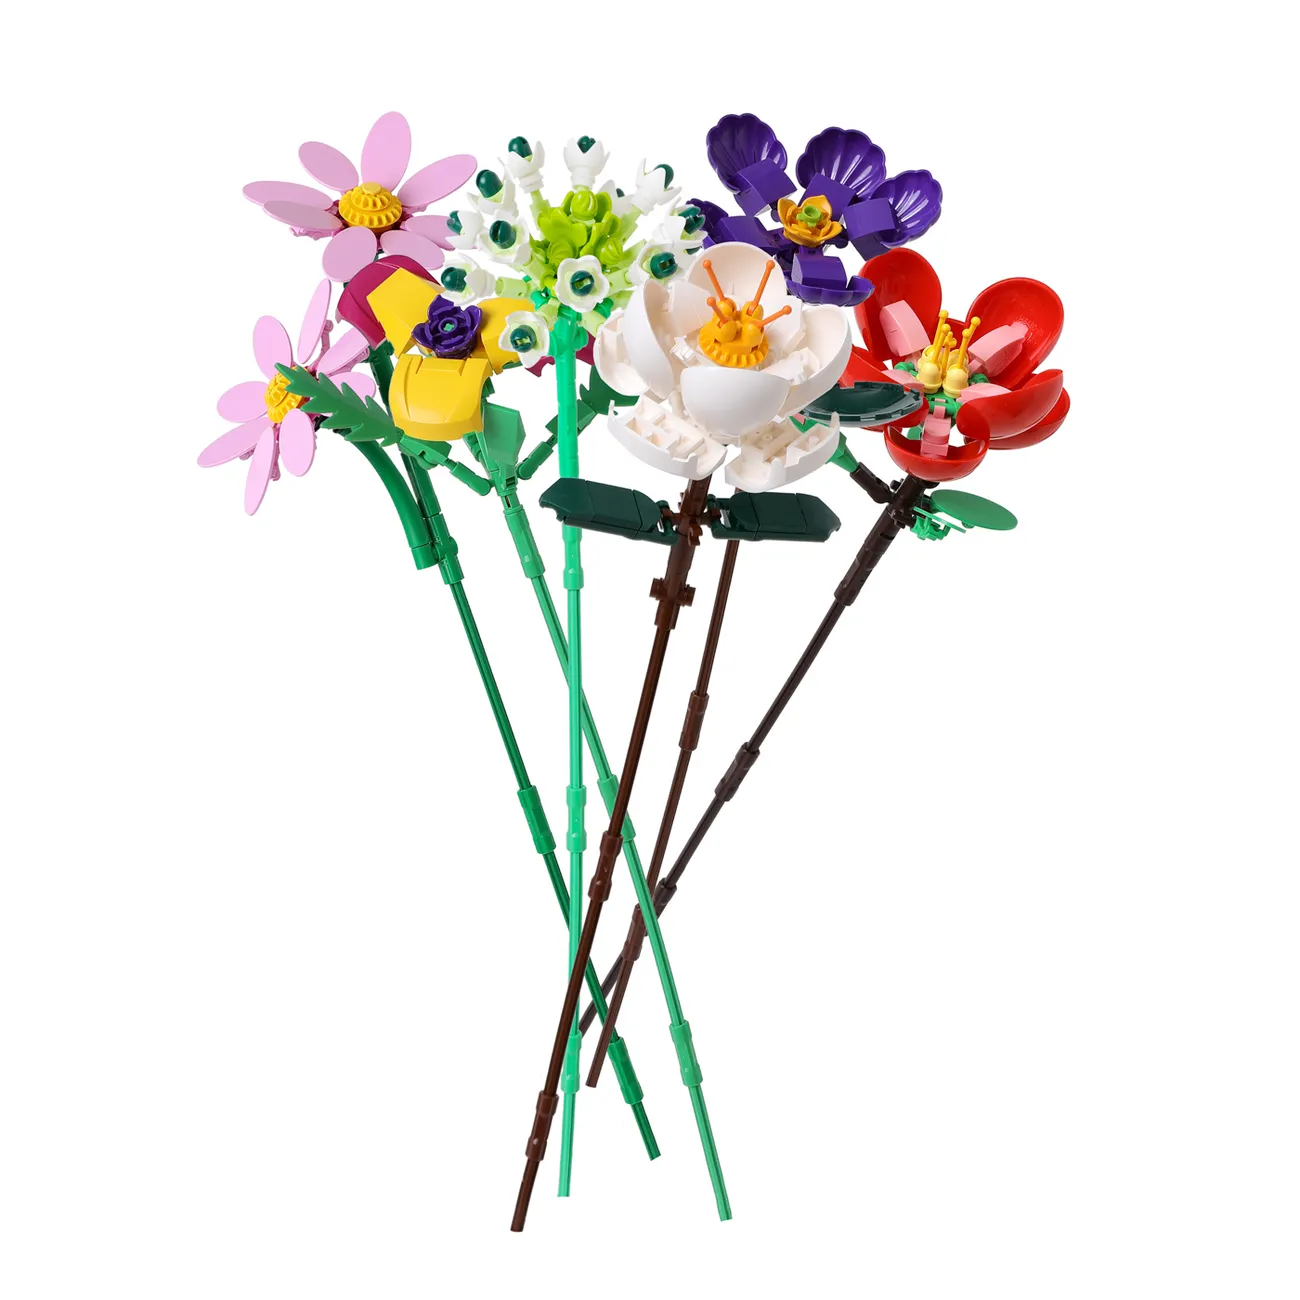 مجموعة مكعبات بناء الزهور الاصطناعية ذاتي الصنع ، ألعاب بناء الزهور الاصطناعية ، ألعاب مشروع إبداعي هدية للكبار والأطفال (لا تشمل المزهرية) أبيض big image 1